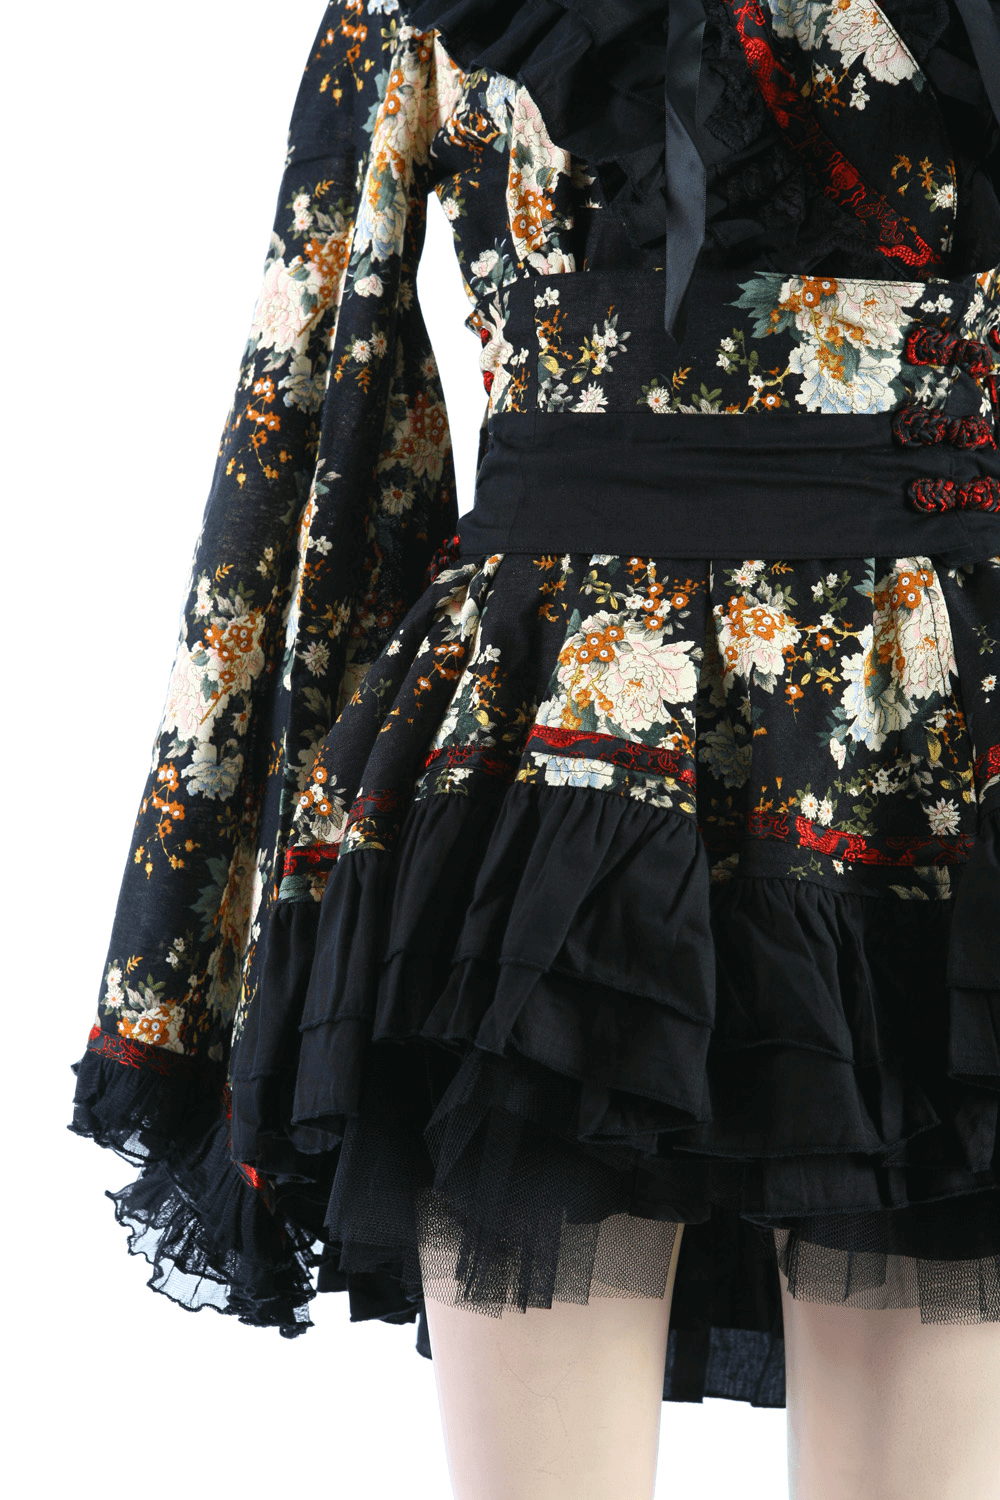 Robe Lolita florale noire d'inspiration gothique pour femmes